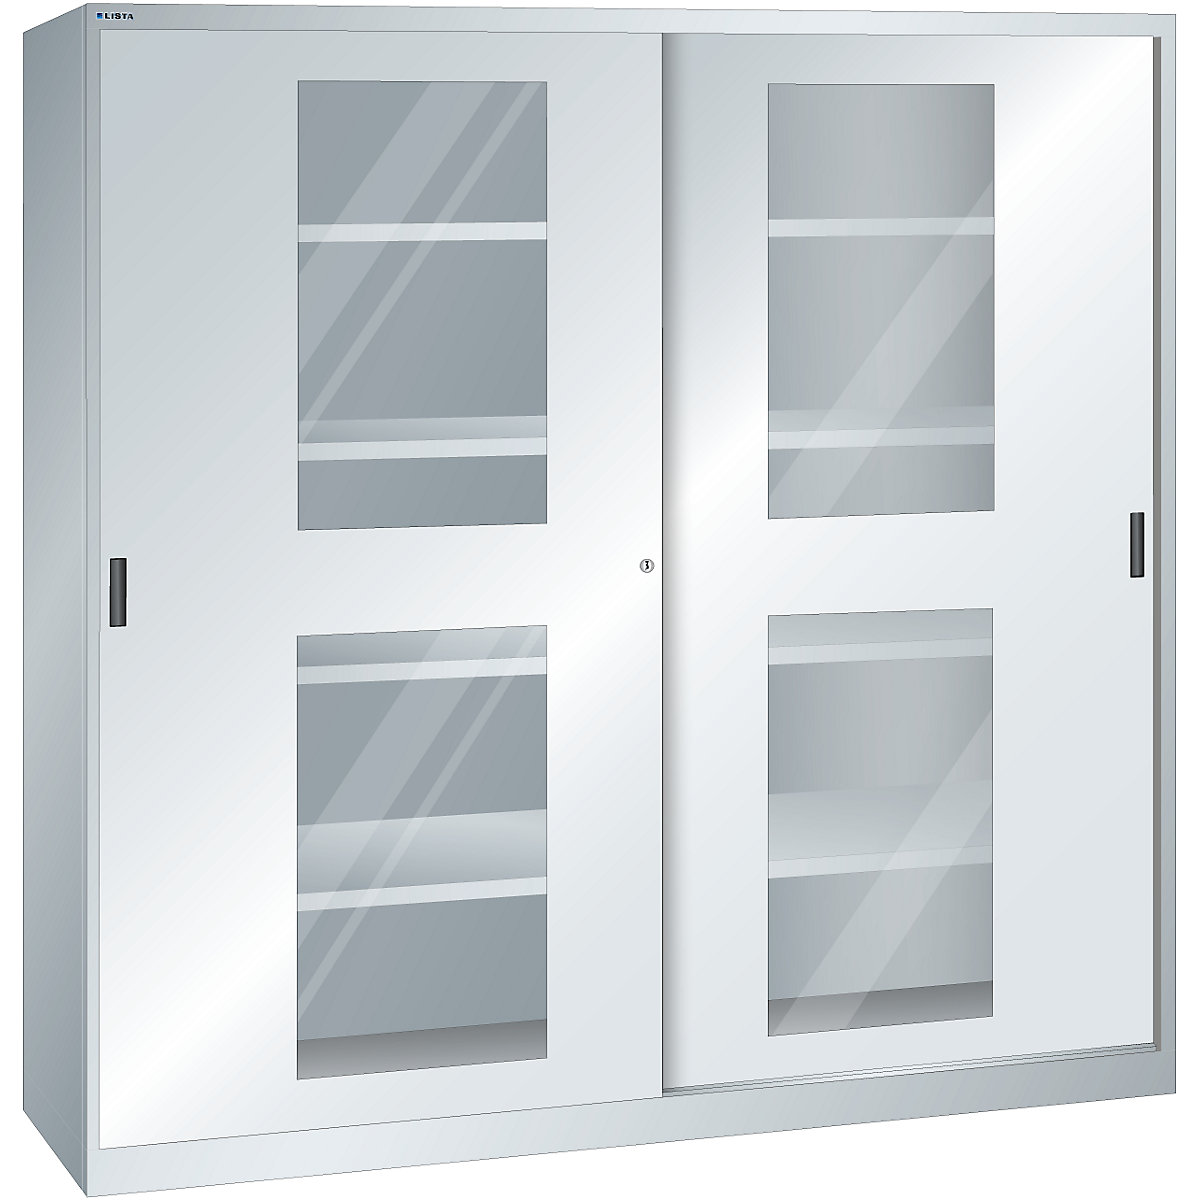 Dulap cu uși glisante cu geamuri transparente – LISTA (Imagine produs 5)-4